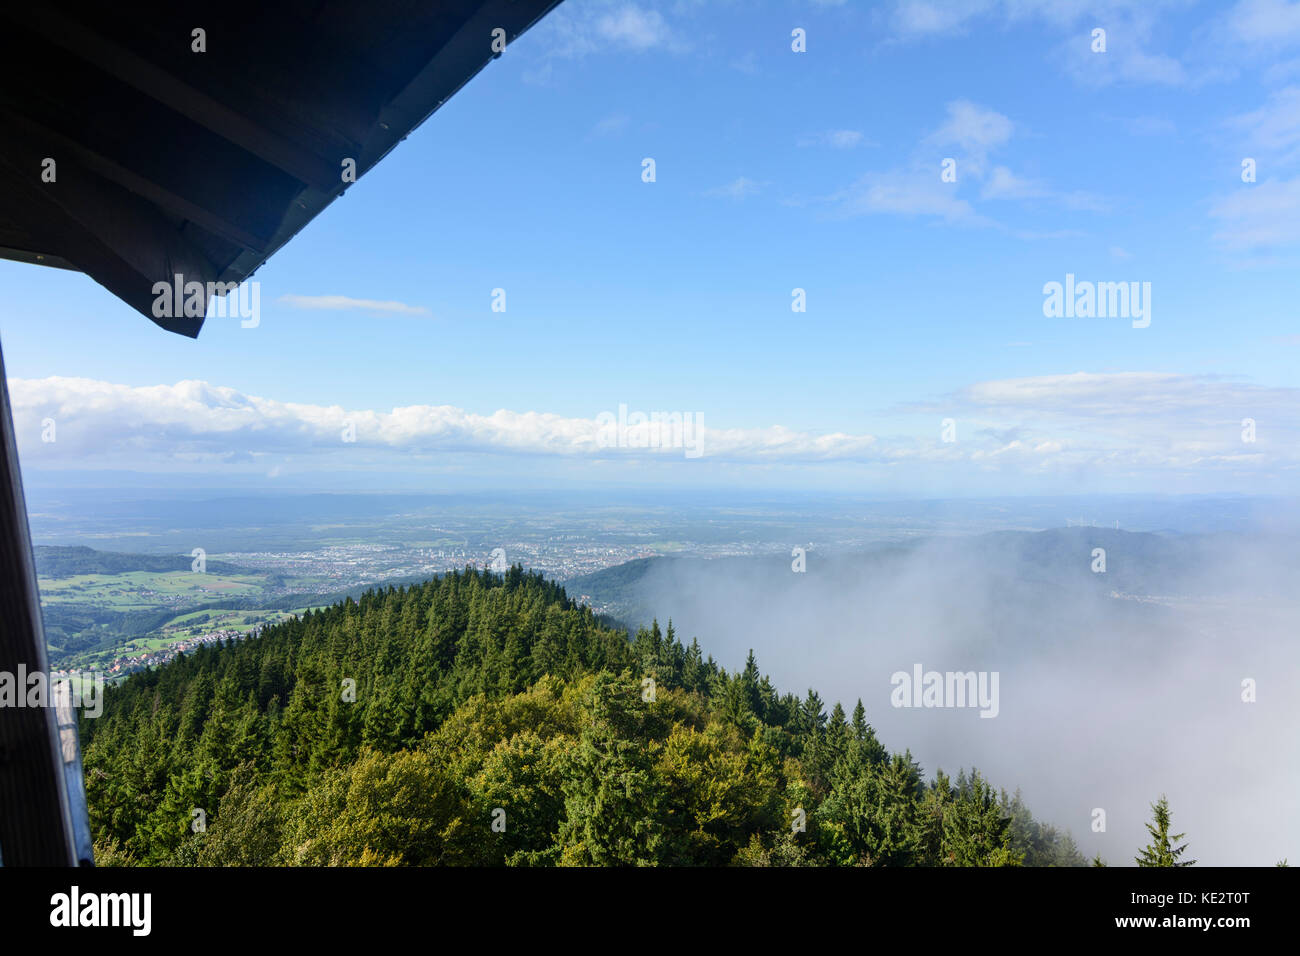 Torre de observación Eugen-Keidel-Turm en Mountain View, Schauinsland Oberried en Freiburg (Breisgau), Schwarzwald, la Selva Negra, en el Estado federado de Baden-Württemberg, Ger Foto de stock